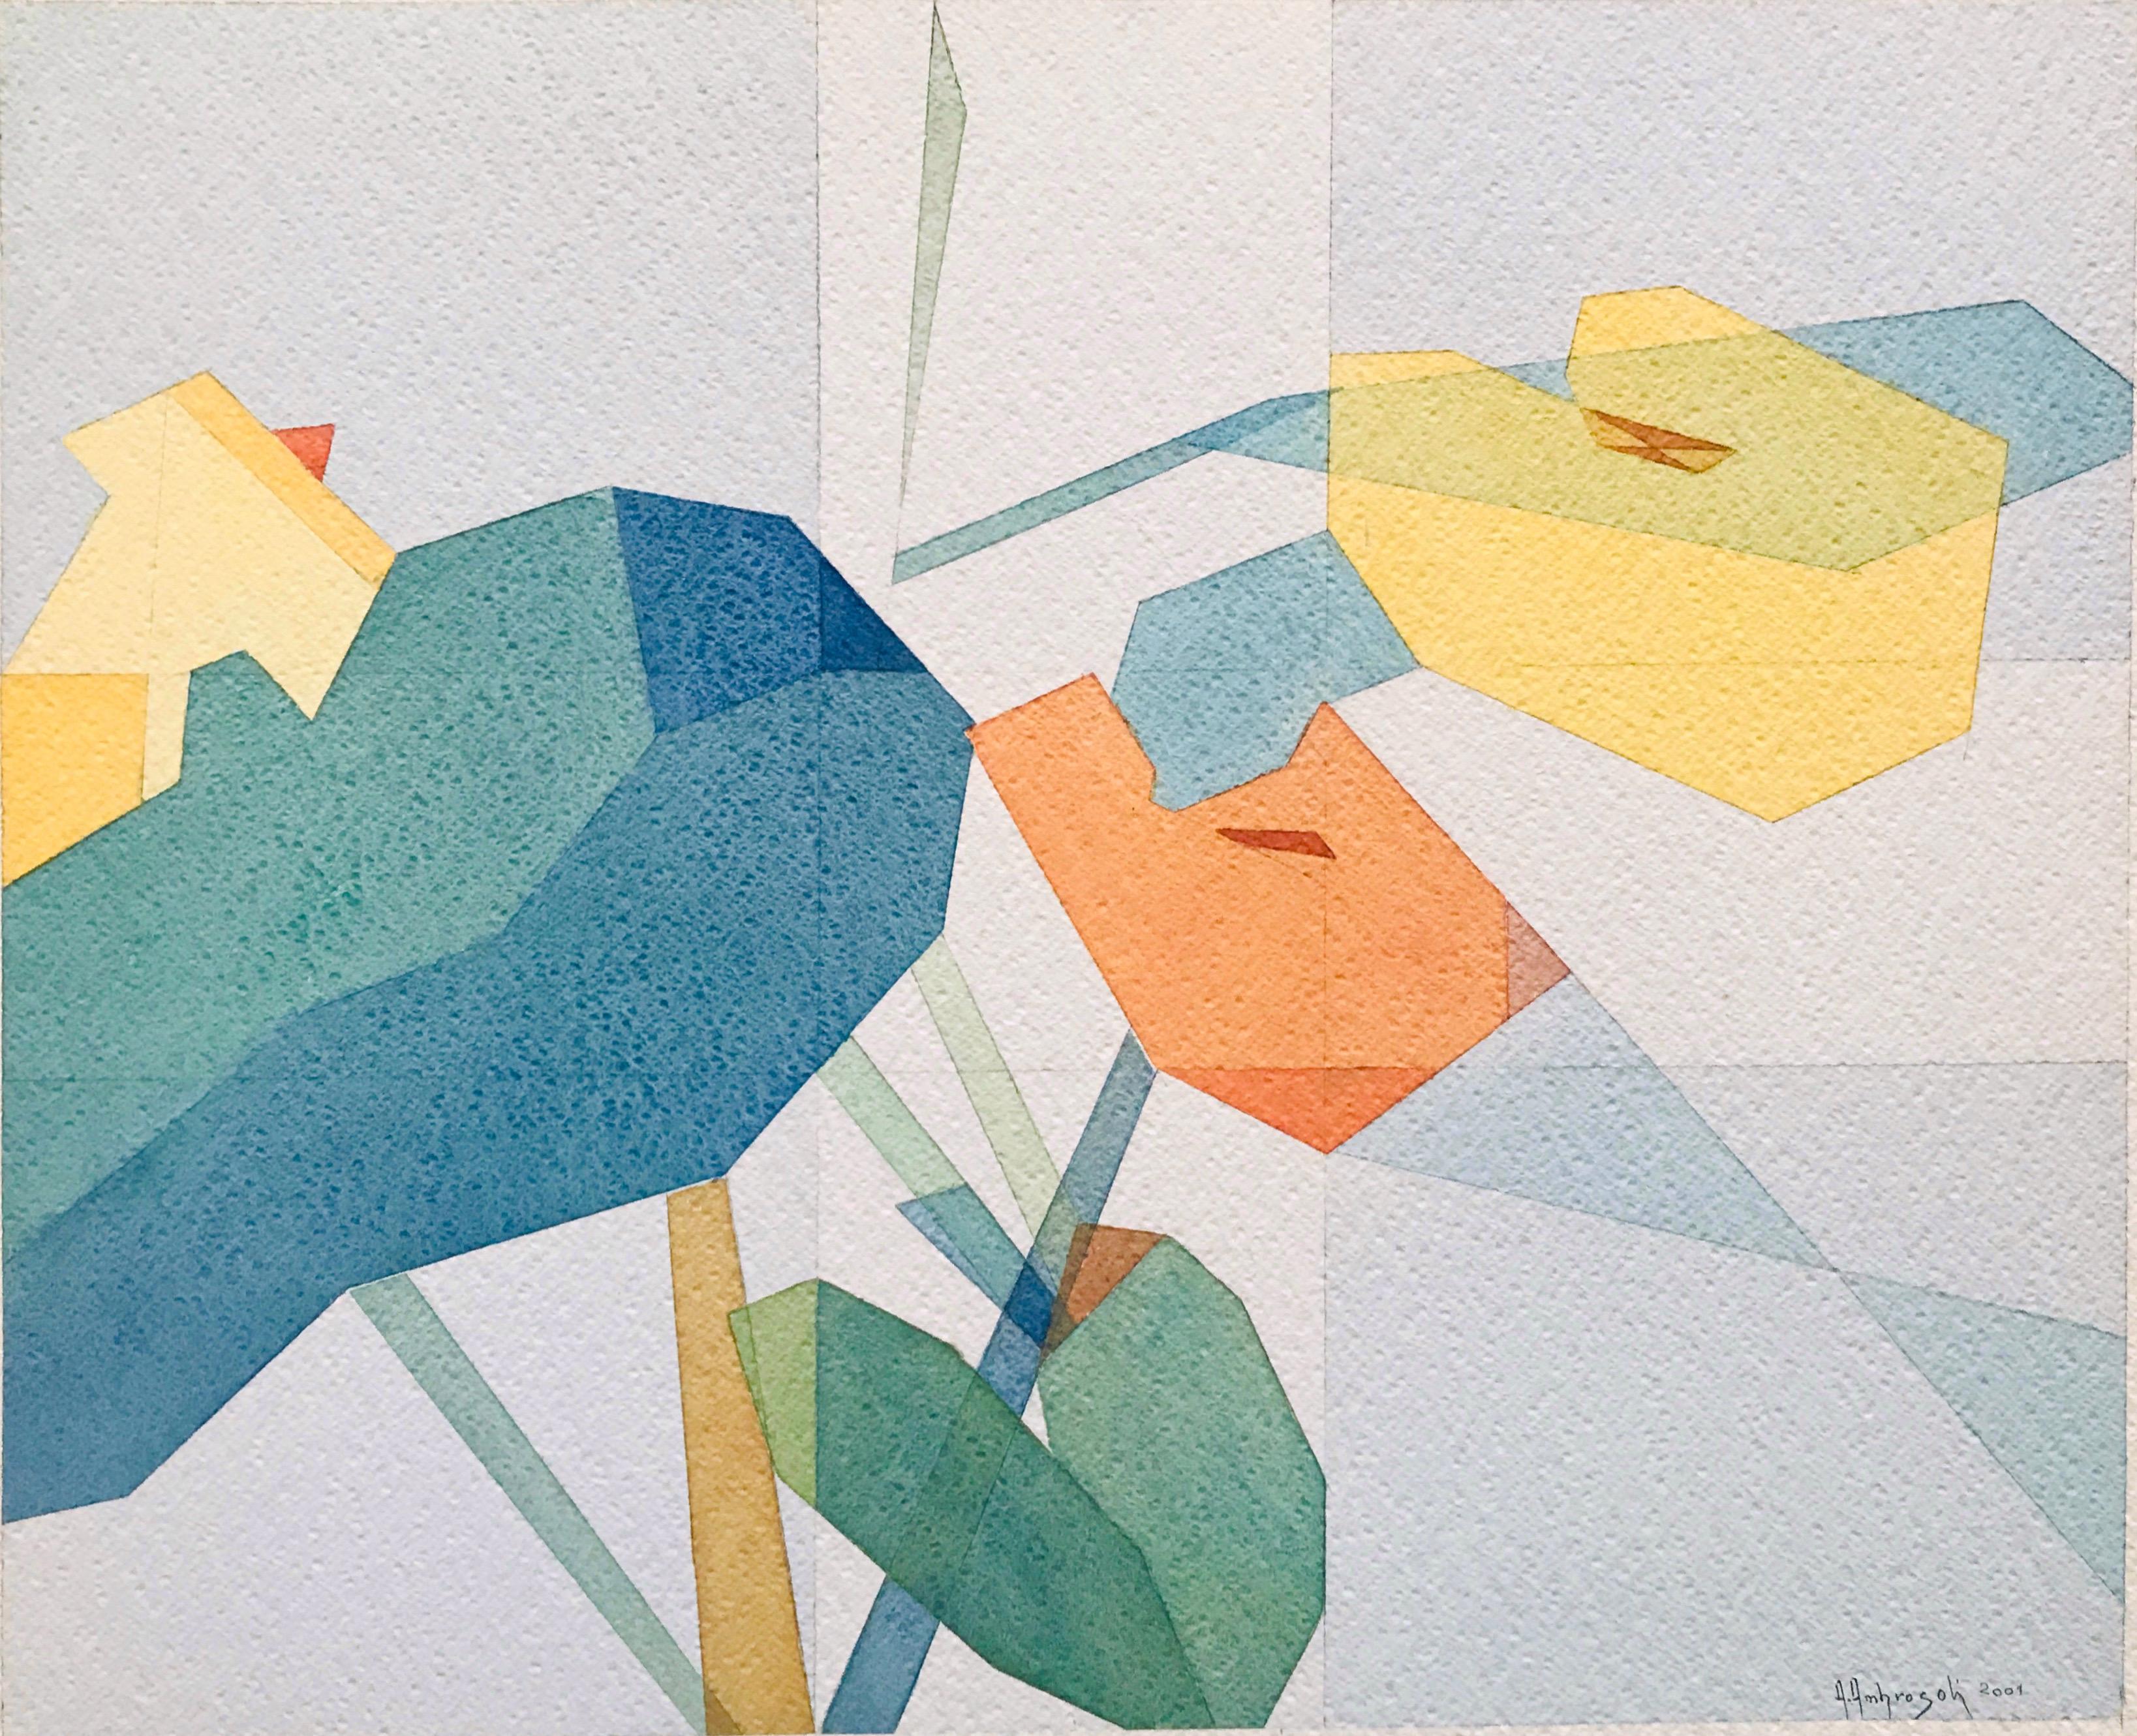 Orange und Gelb ist ein Aquarell der zeitgenössischen Künstlerin Annemarie Ambrosoli, gemalt auf 600 g/m² Fabriano-Karton, mit den Maßen 39x50 cm. 
Oberfläche des Kartons: grobe Körnung.
Dieses Bild ist Teil einer Serie von Aquarellen, die zwischen